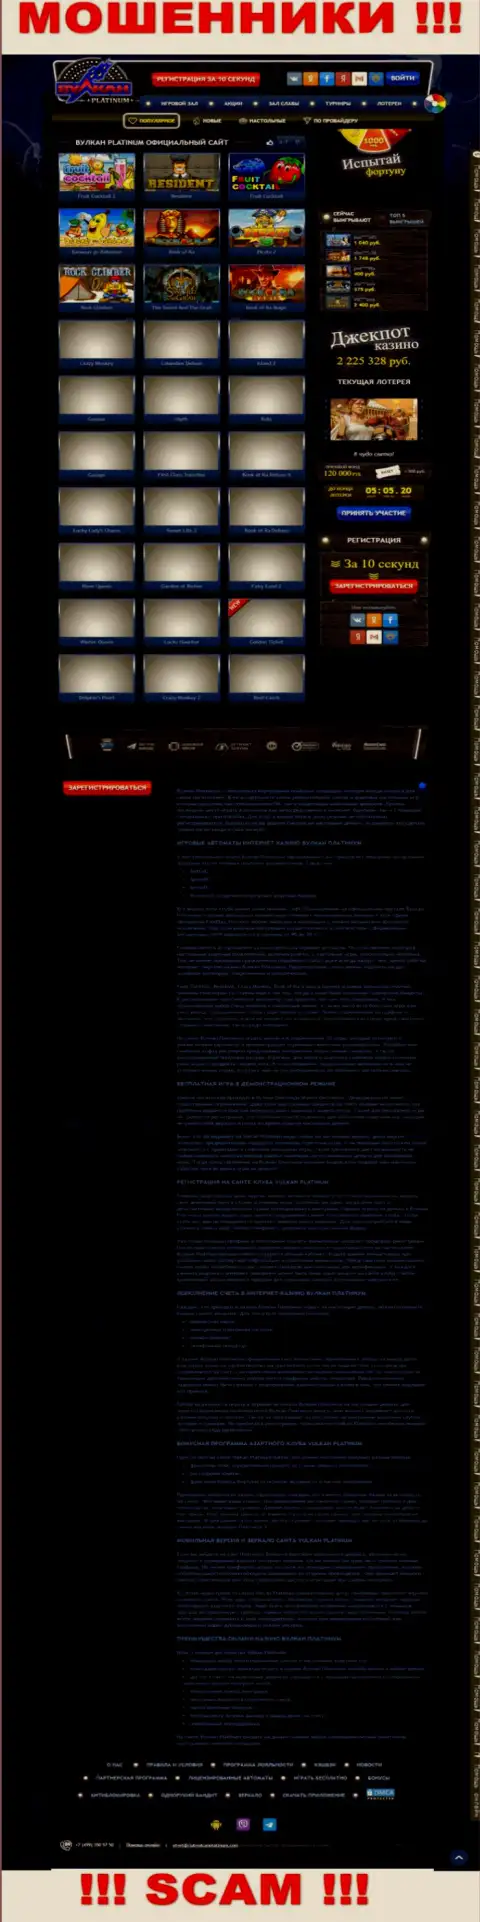 Скрин официального веб-сайта VulcanPlatinum - ClubVulcanPlatinum Com